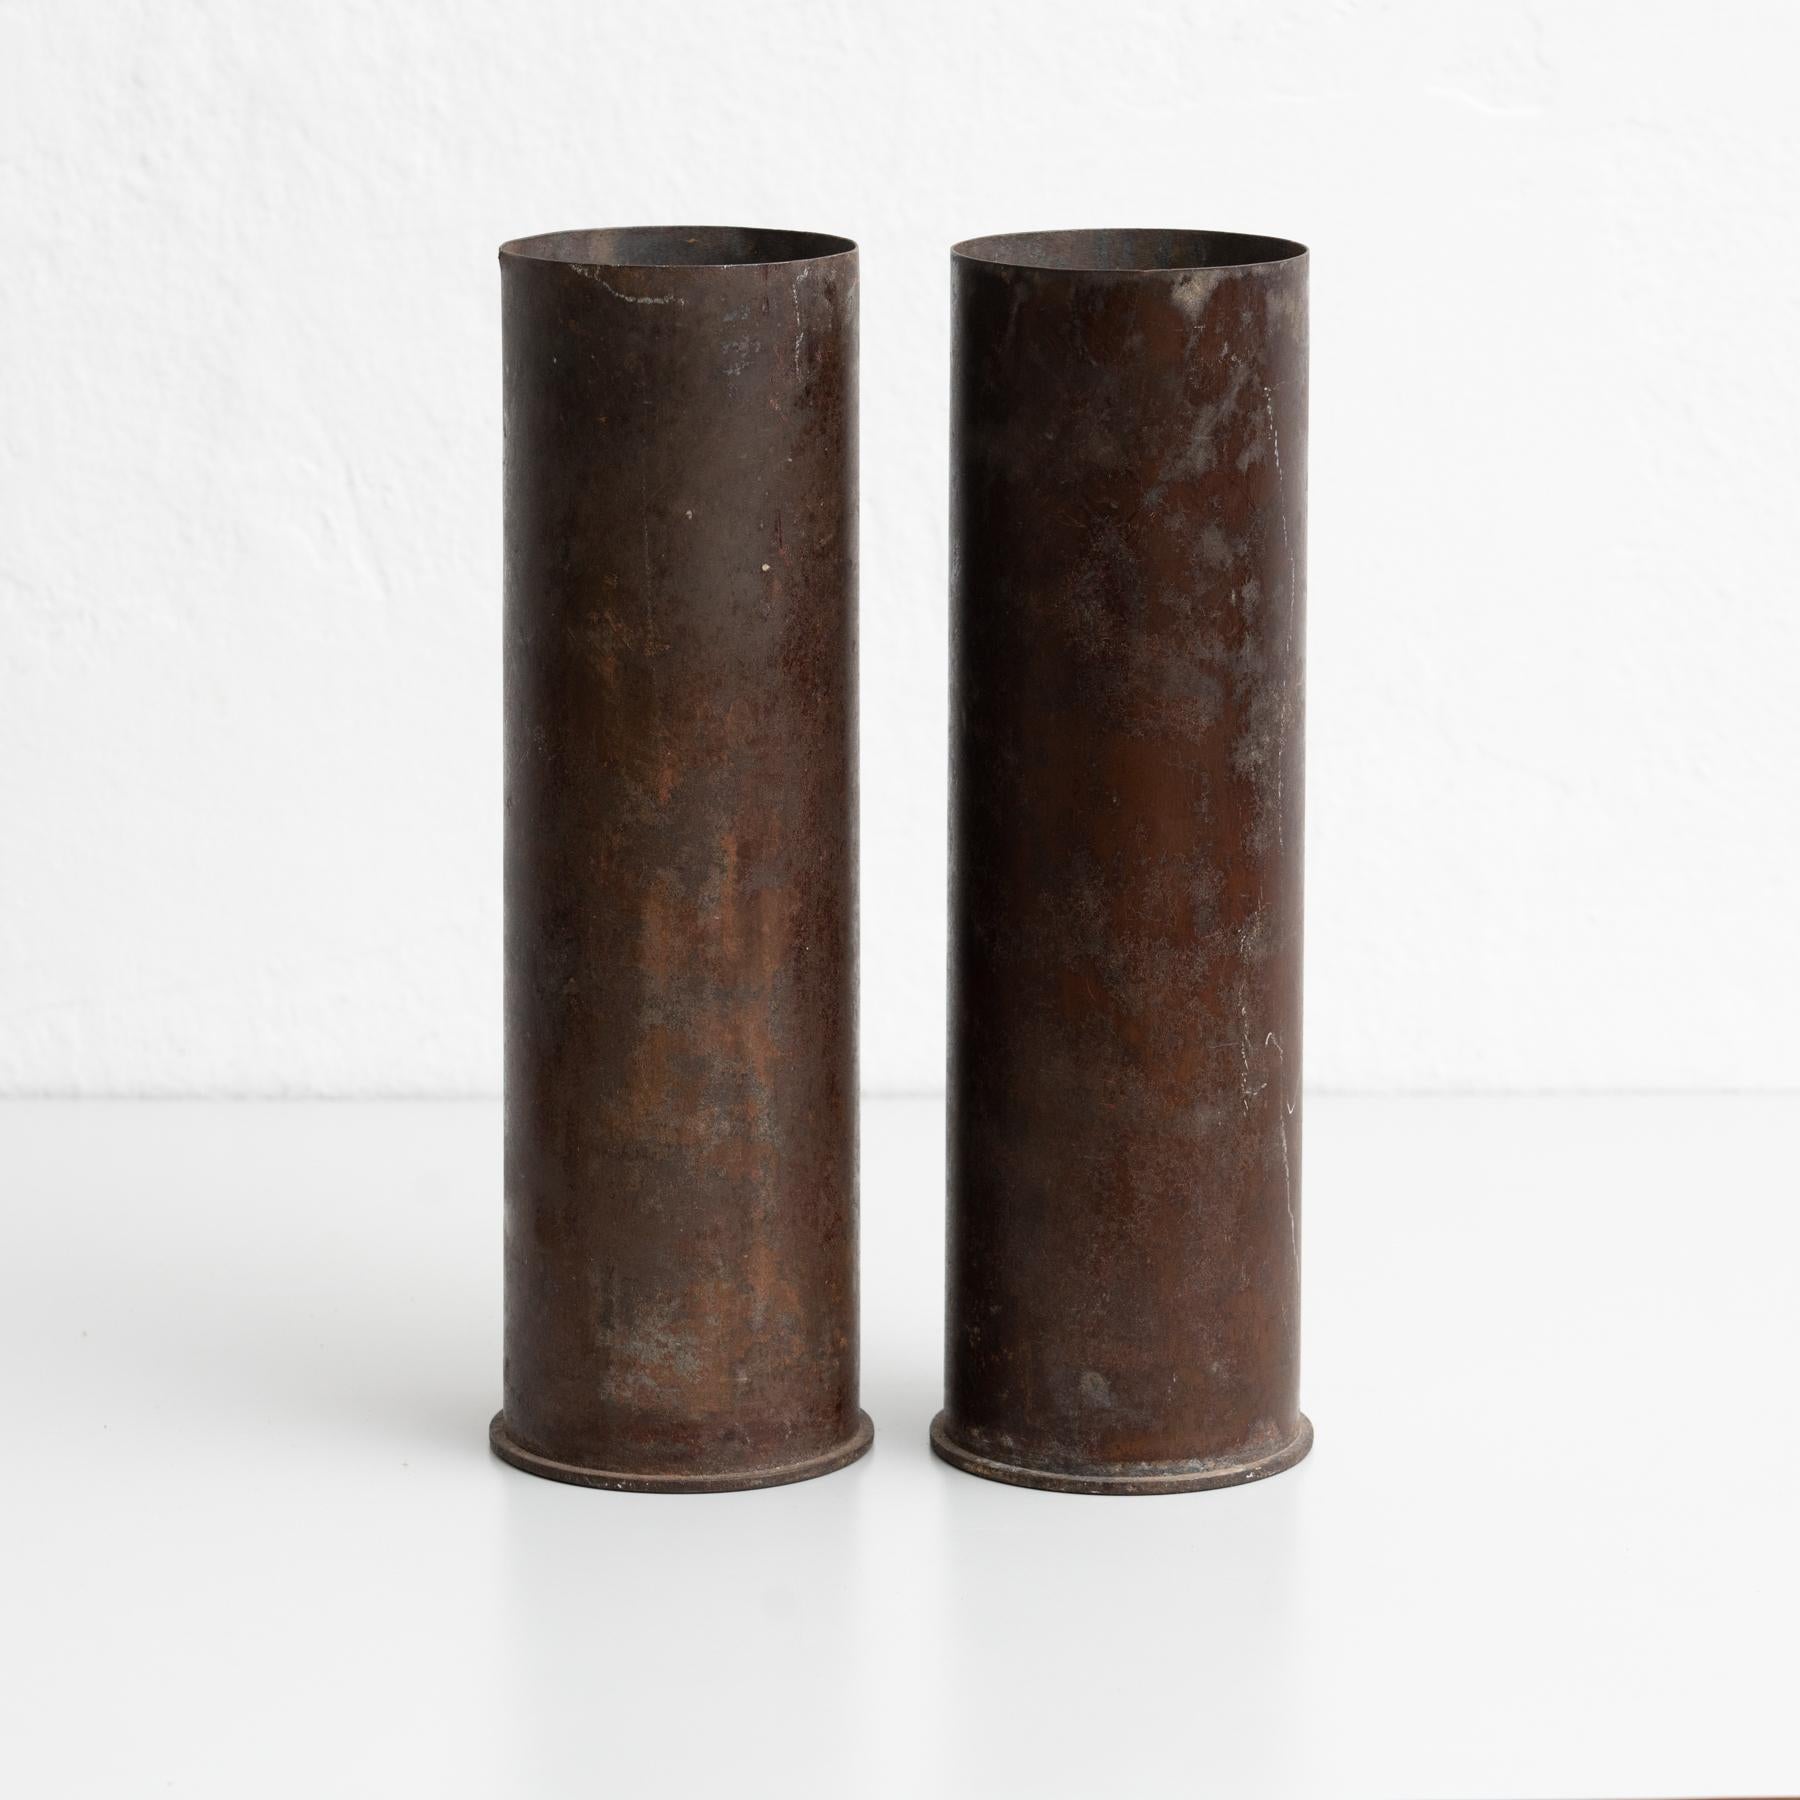 Satz von zwei Mörtelkappen aus Bronze, die als Vasen verwendet werden.

Von einem unbekannten Hersteller aus Spanien, um 1930.

Originaler Zustand mit geringen alters- und gebrauchsbedingten Abnutzungserscheinungen, der eine schöne Patina